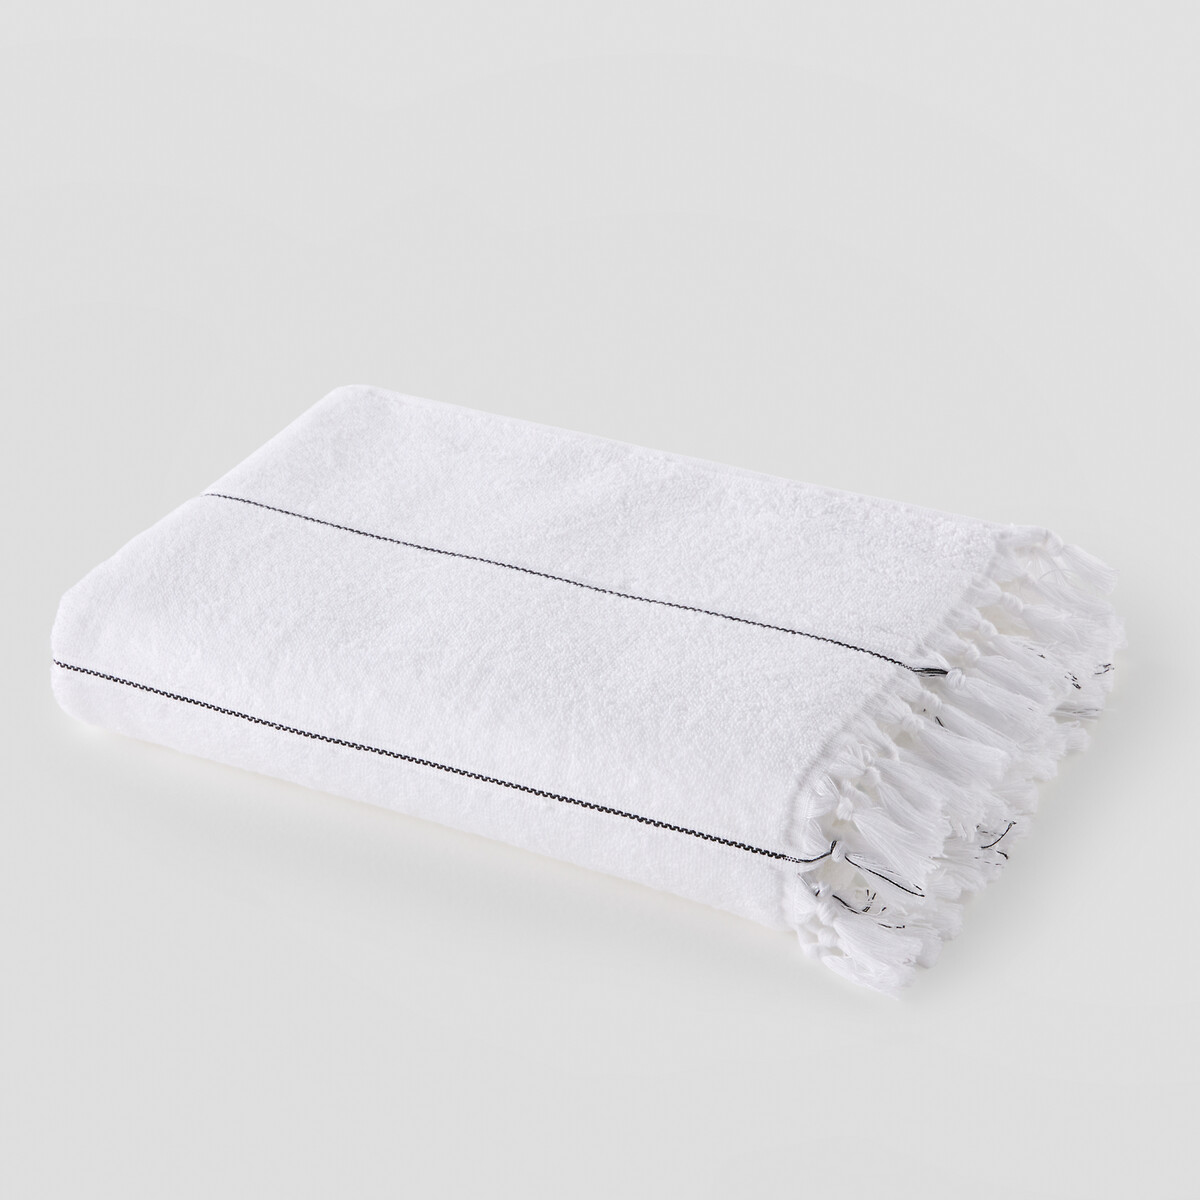 Одеяло LaRedoute Банное из махровой ткани 500г Liza 70 x 140 см белый, размер 70 x 140 см